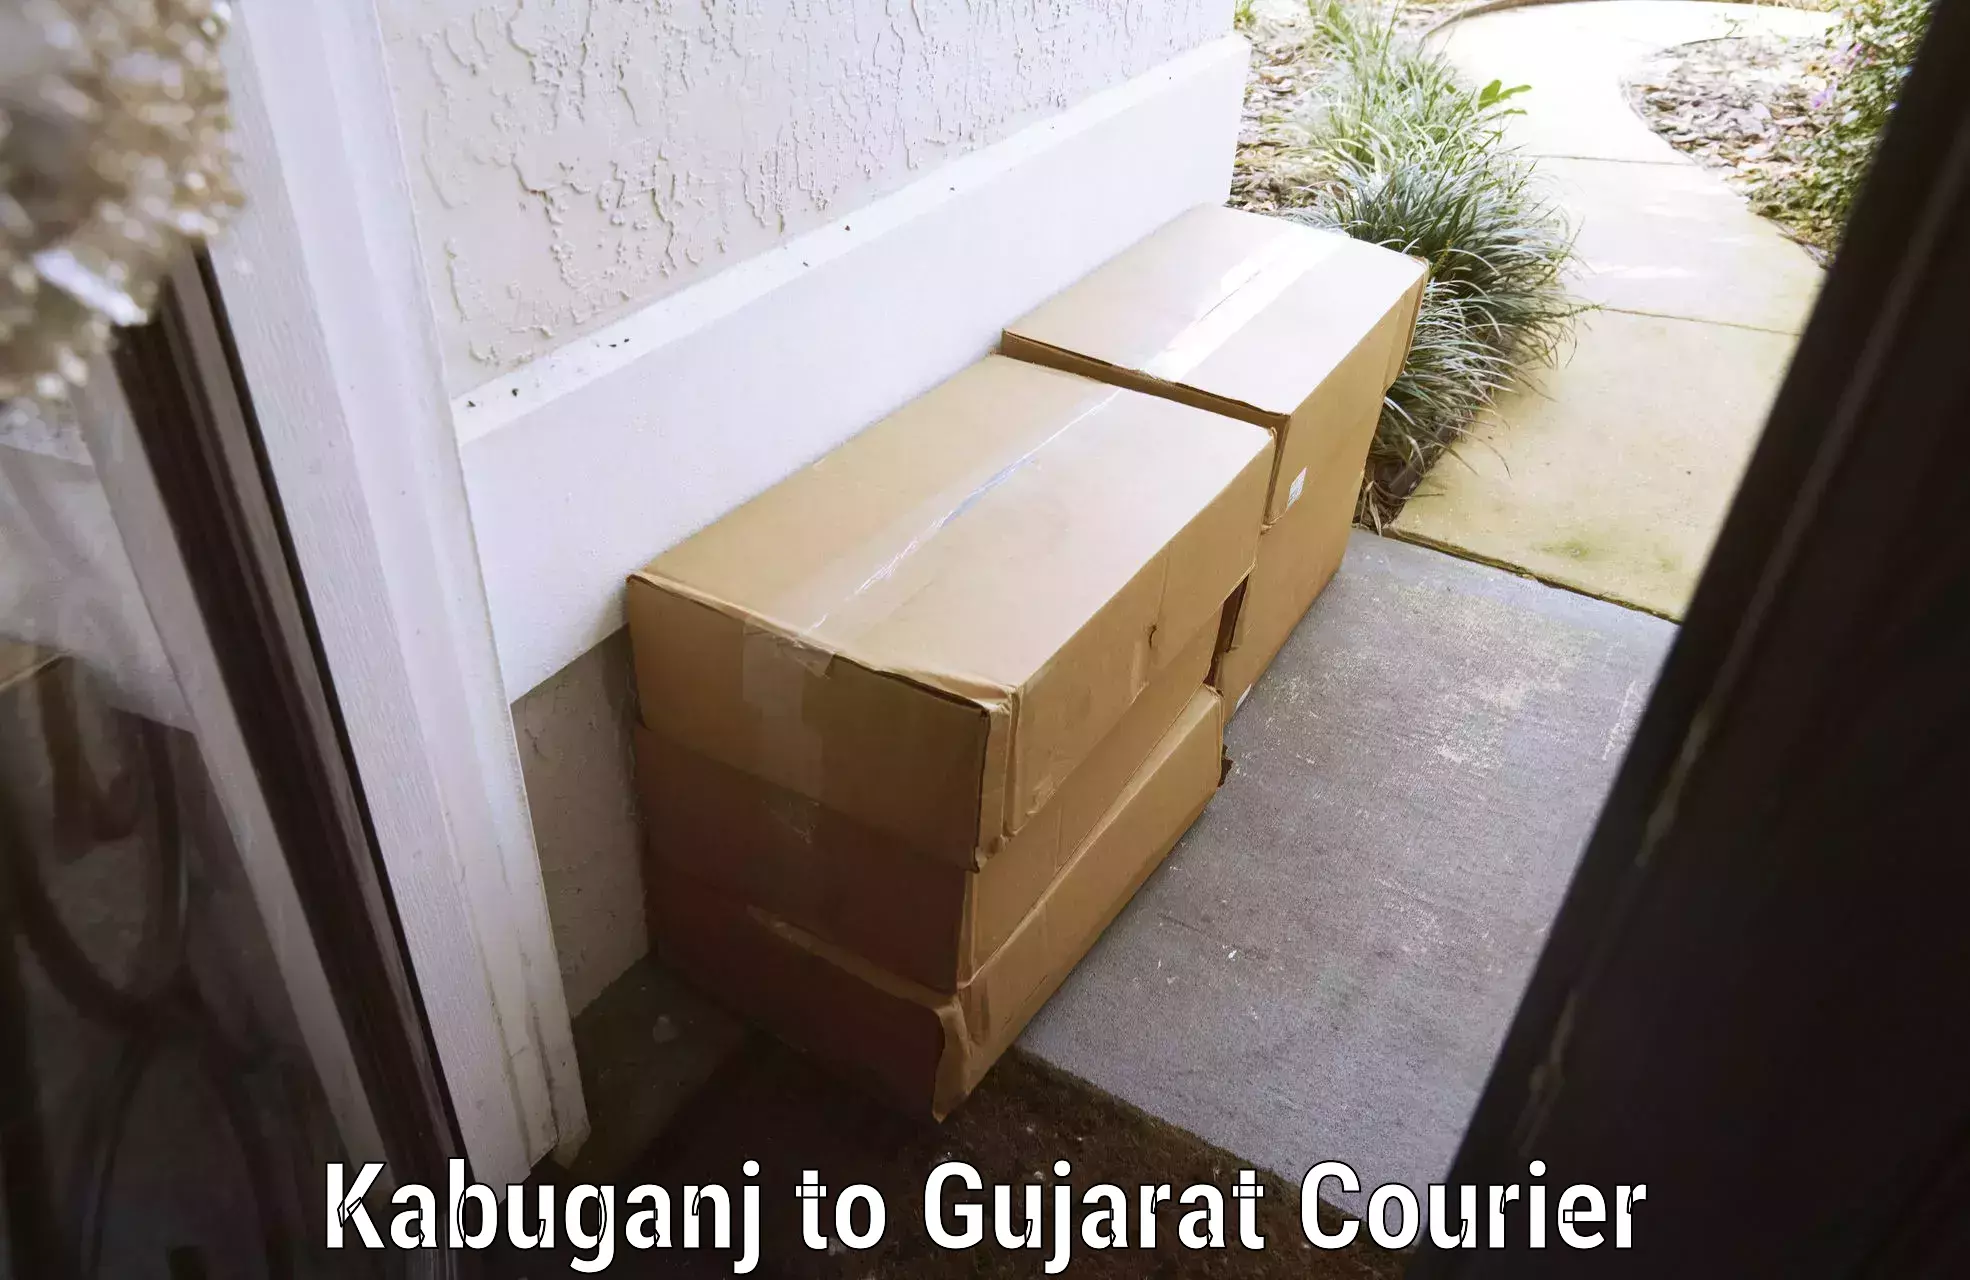 Professional baggage delivery Kabuganj to Gandhinagar